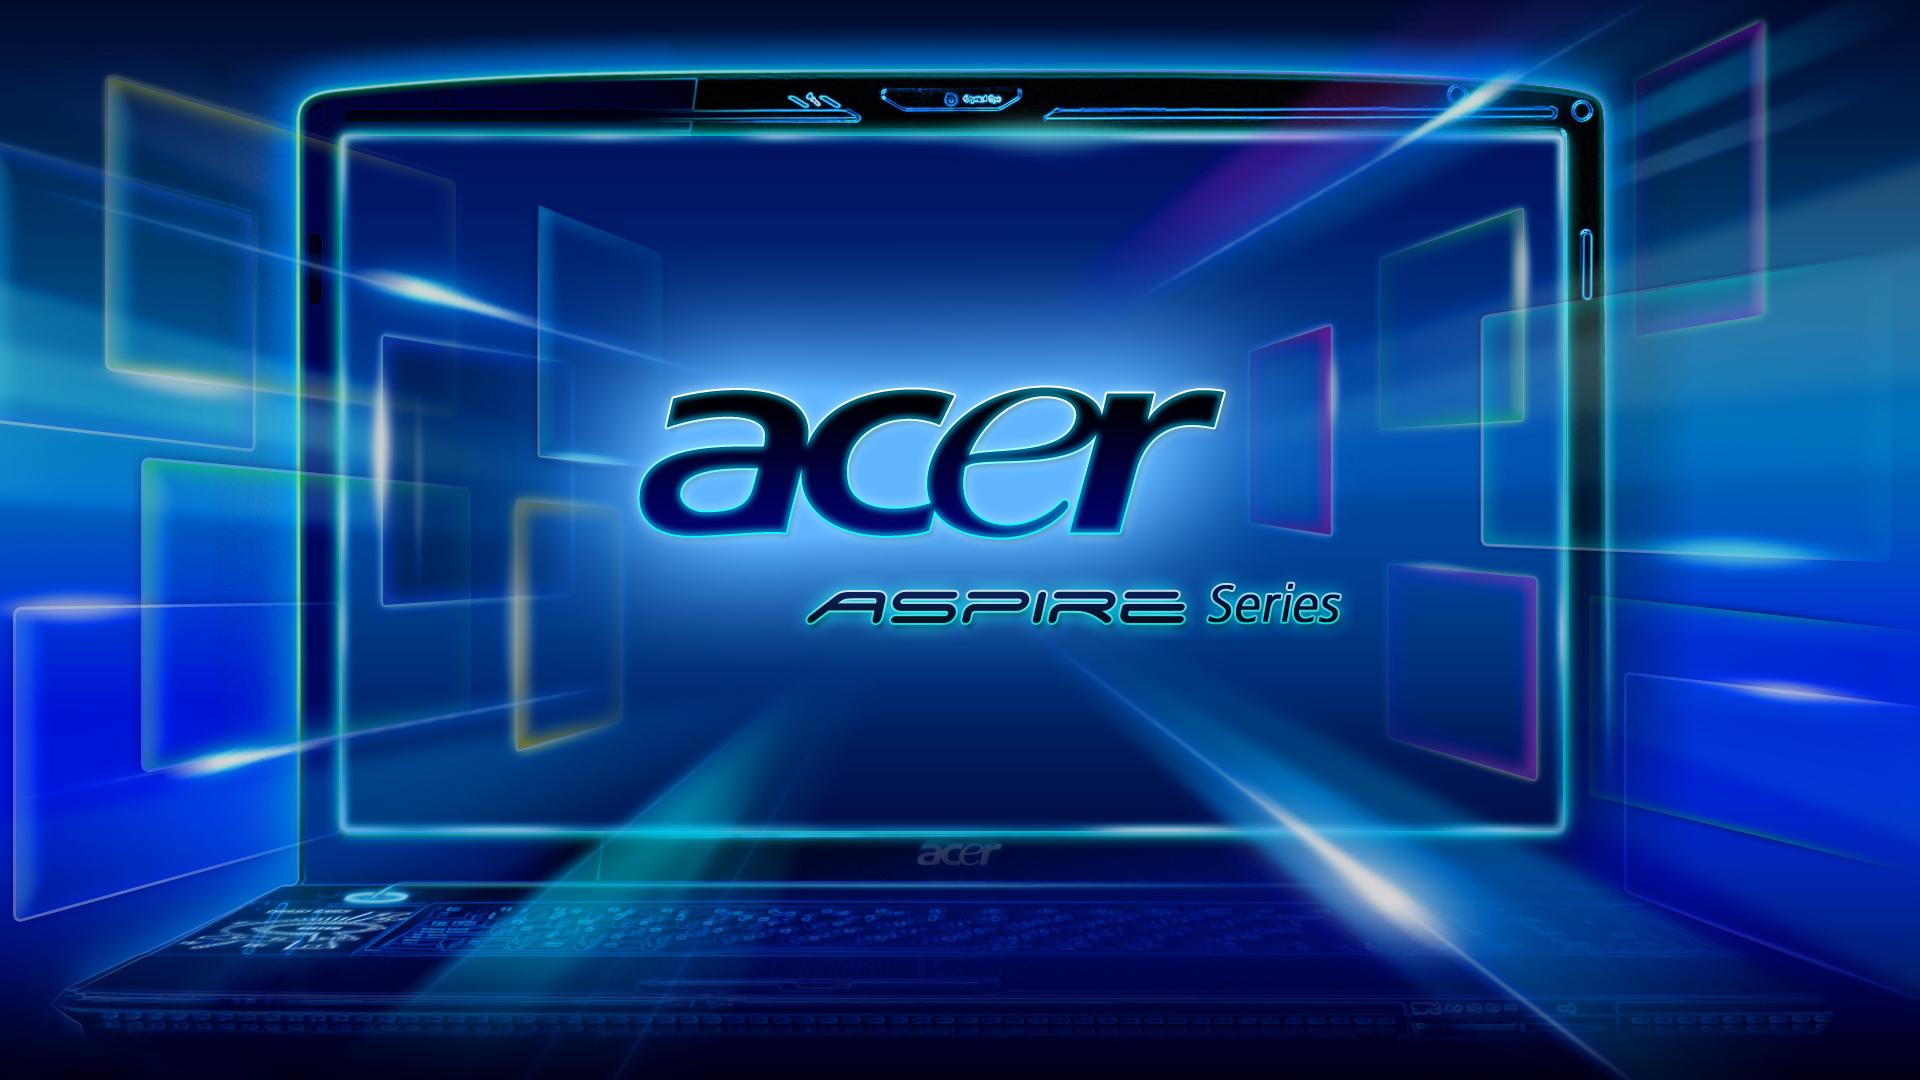 Acer Sample Pictures 壁紙 37470573 ファンポップ